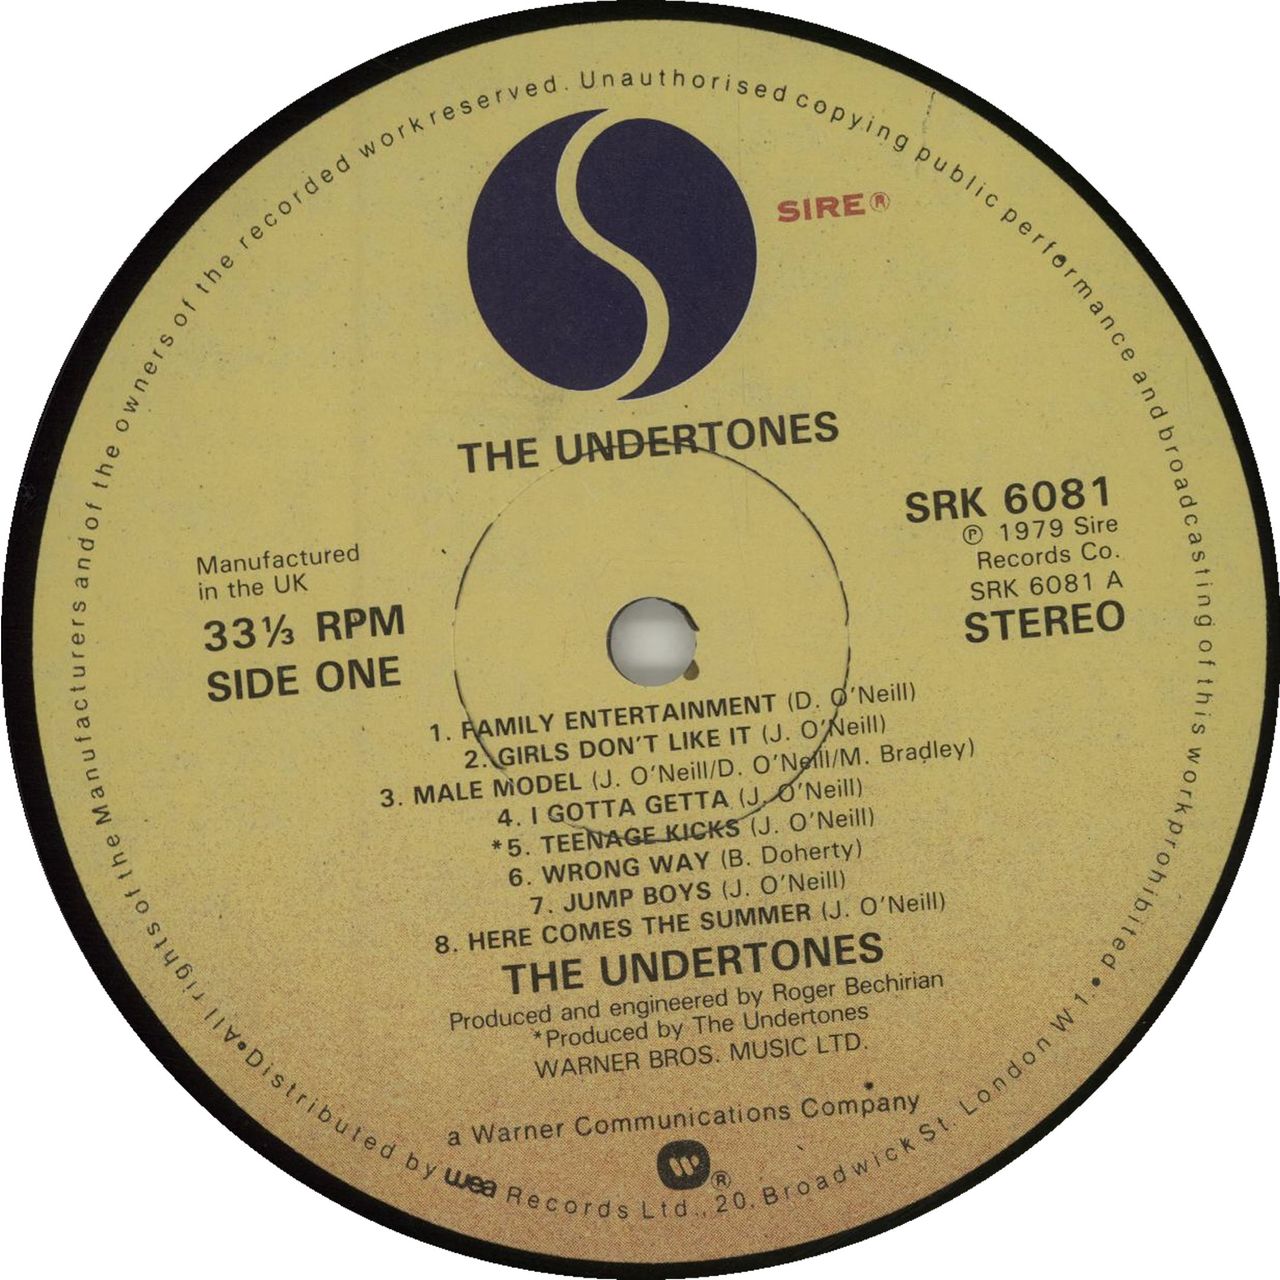 The Undertones The Undertones + Inner UK Vinyl LP — RareVinyl.com